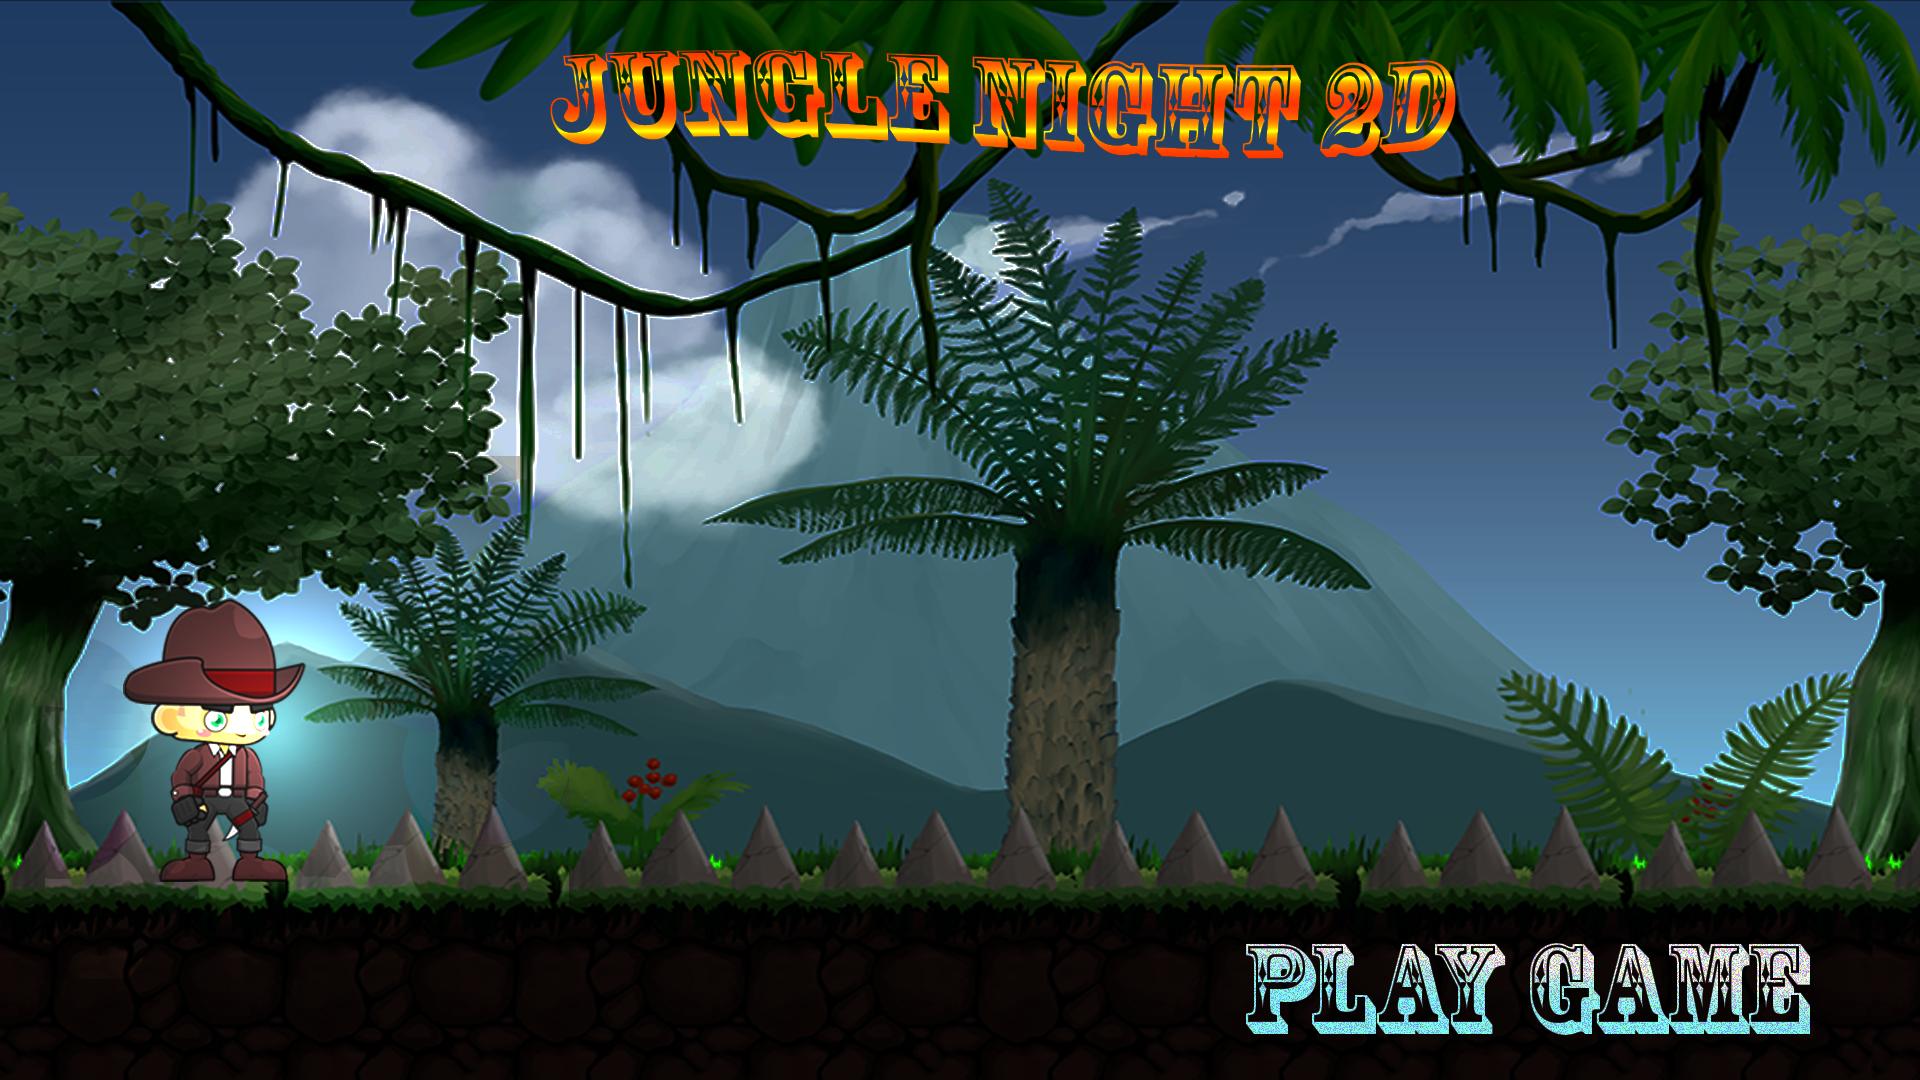 Jungle download. Игра джунгли Tomy. Игра про исследователей в джунглях. Игры флеш игры джунгли побег. Начальный экран игры джунгли.